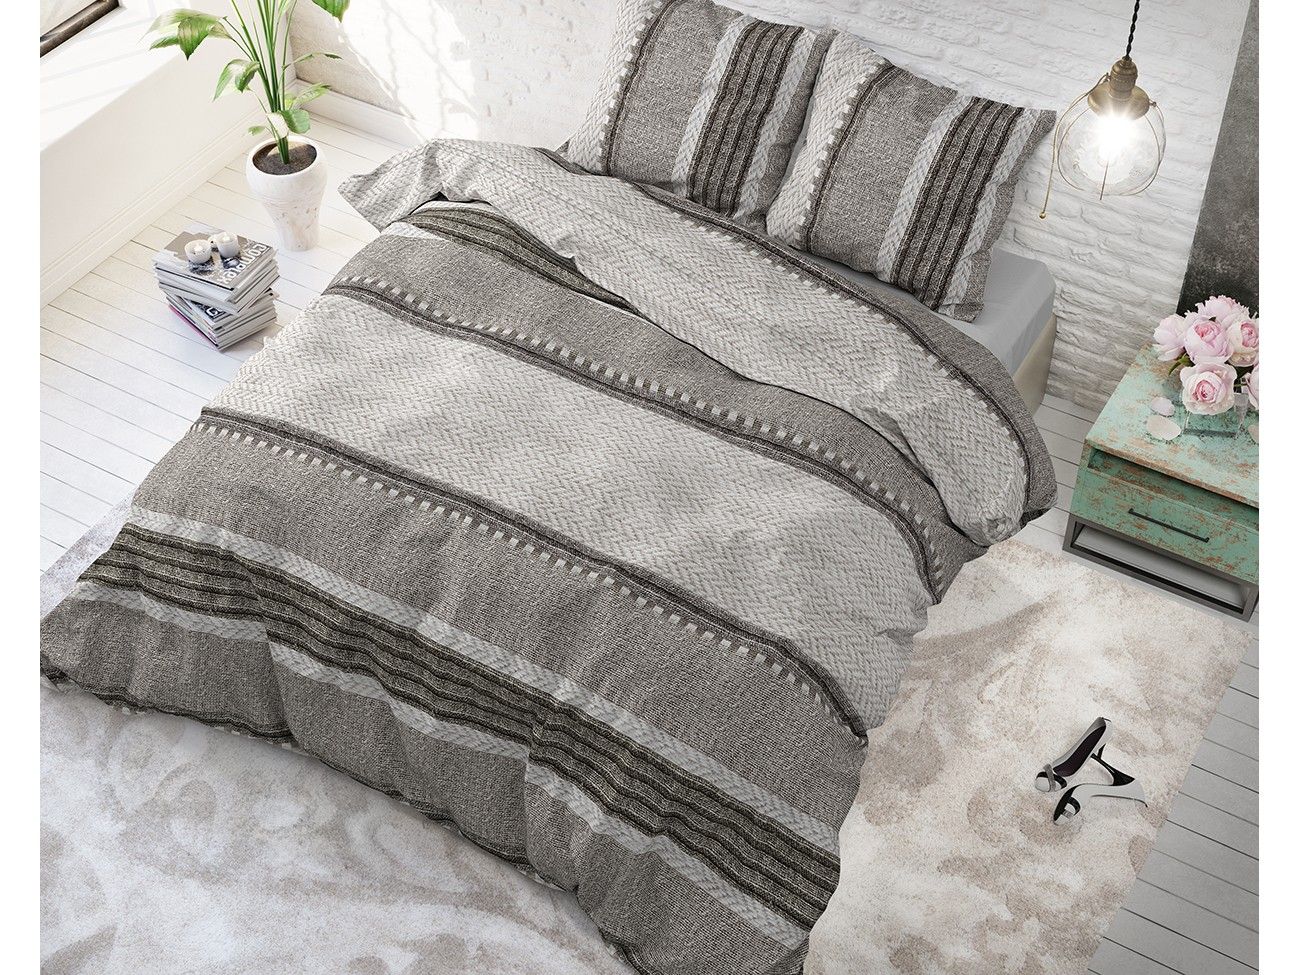 DomTextilu Bavlnené posteľné obliečky s pruhovaným motívom RIVER STRIPES 200 x 220 cm 18120